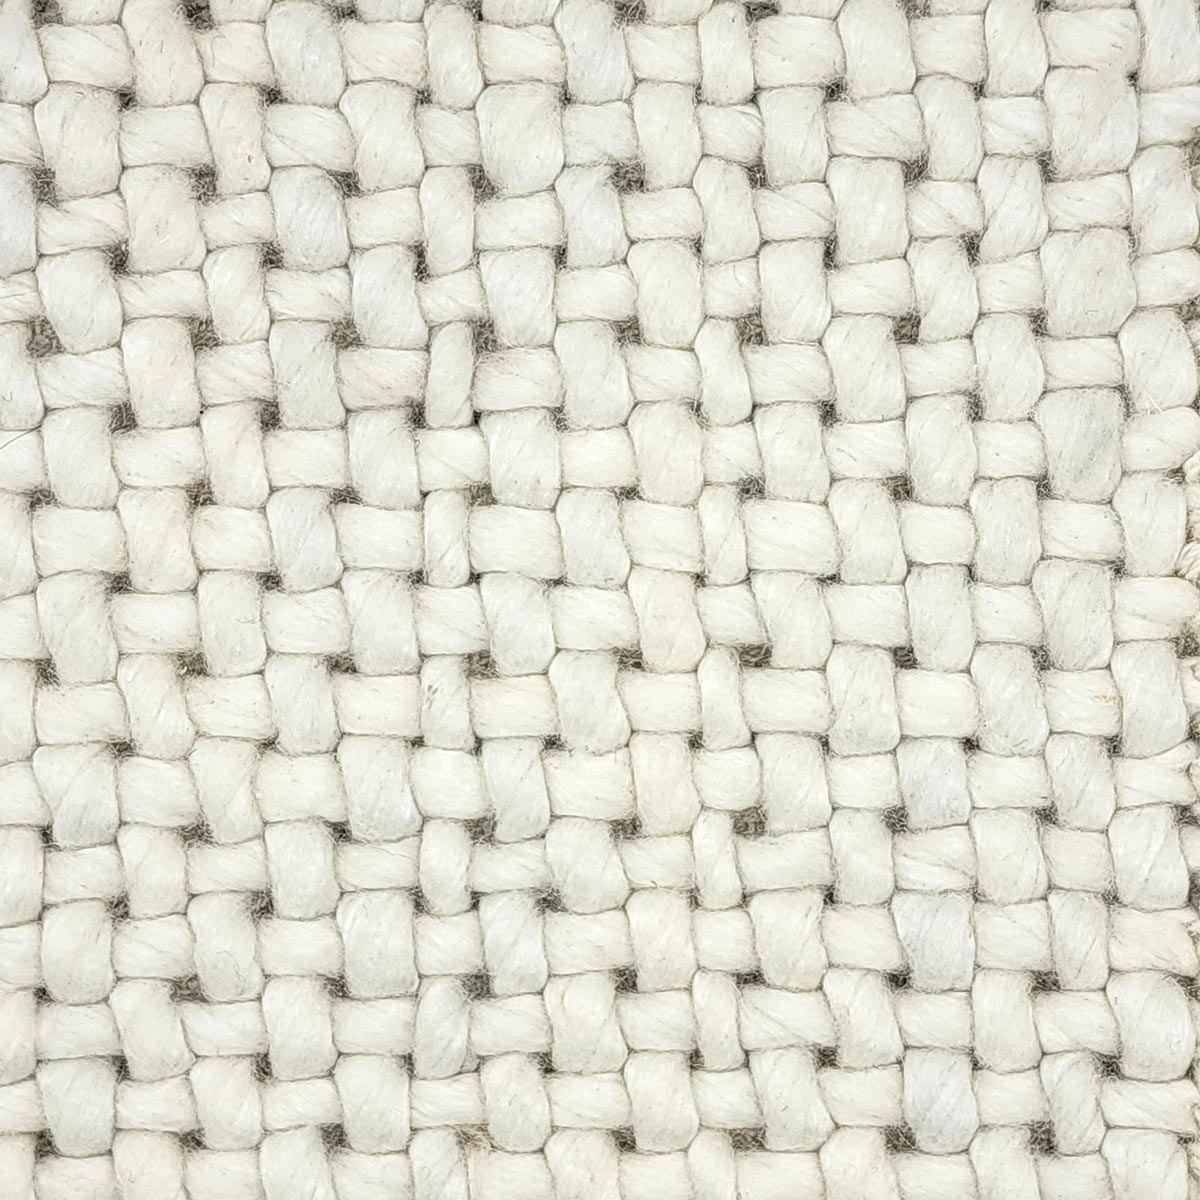 New Mark Carpets Vol. 1 Renaissance White